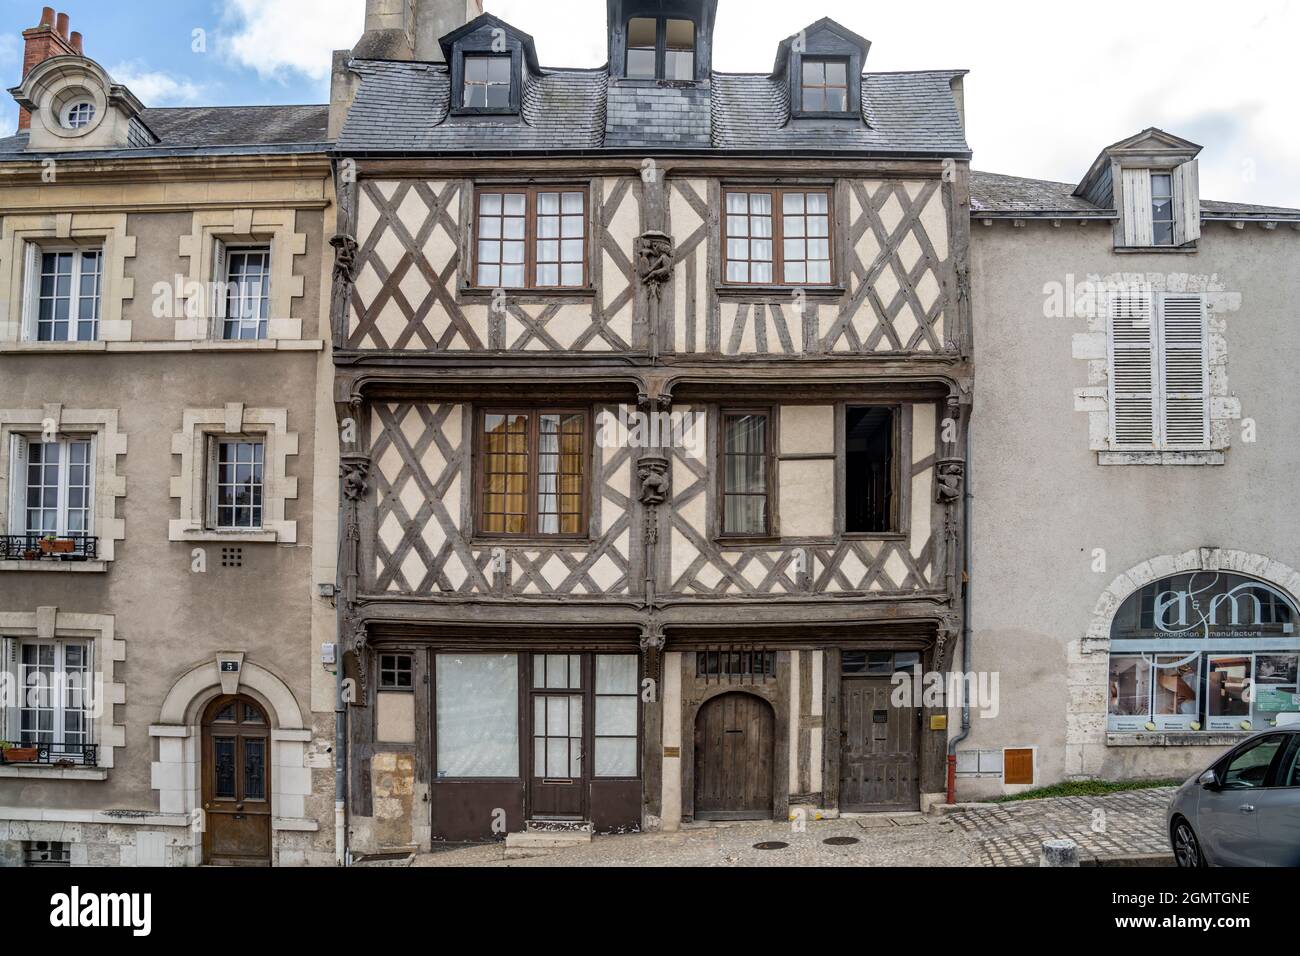 Fachwerkhaus Maison de l'Acrobate in der historischen Altstadt von Blois, Frankreich | Fachwerkhaus Maison de l'Acrobate im historischen Stockfoto